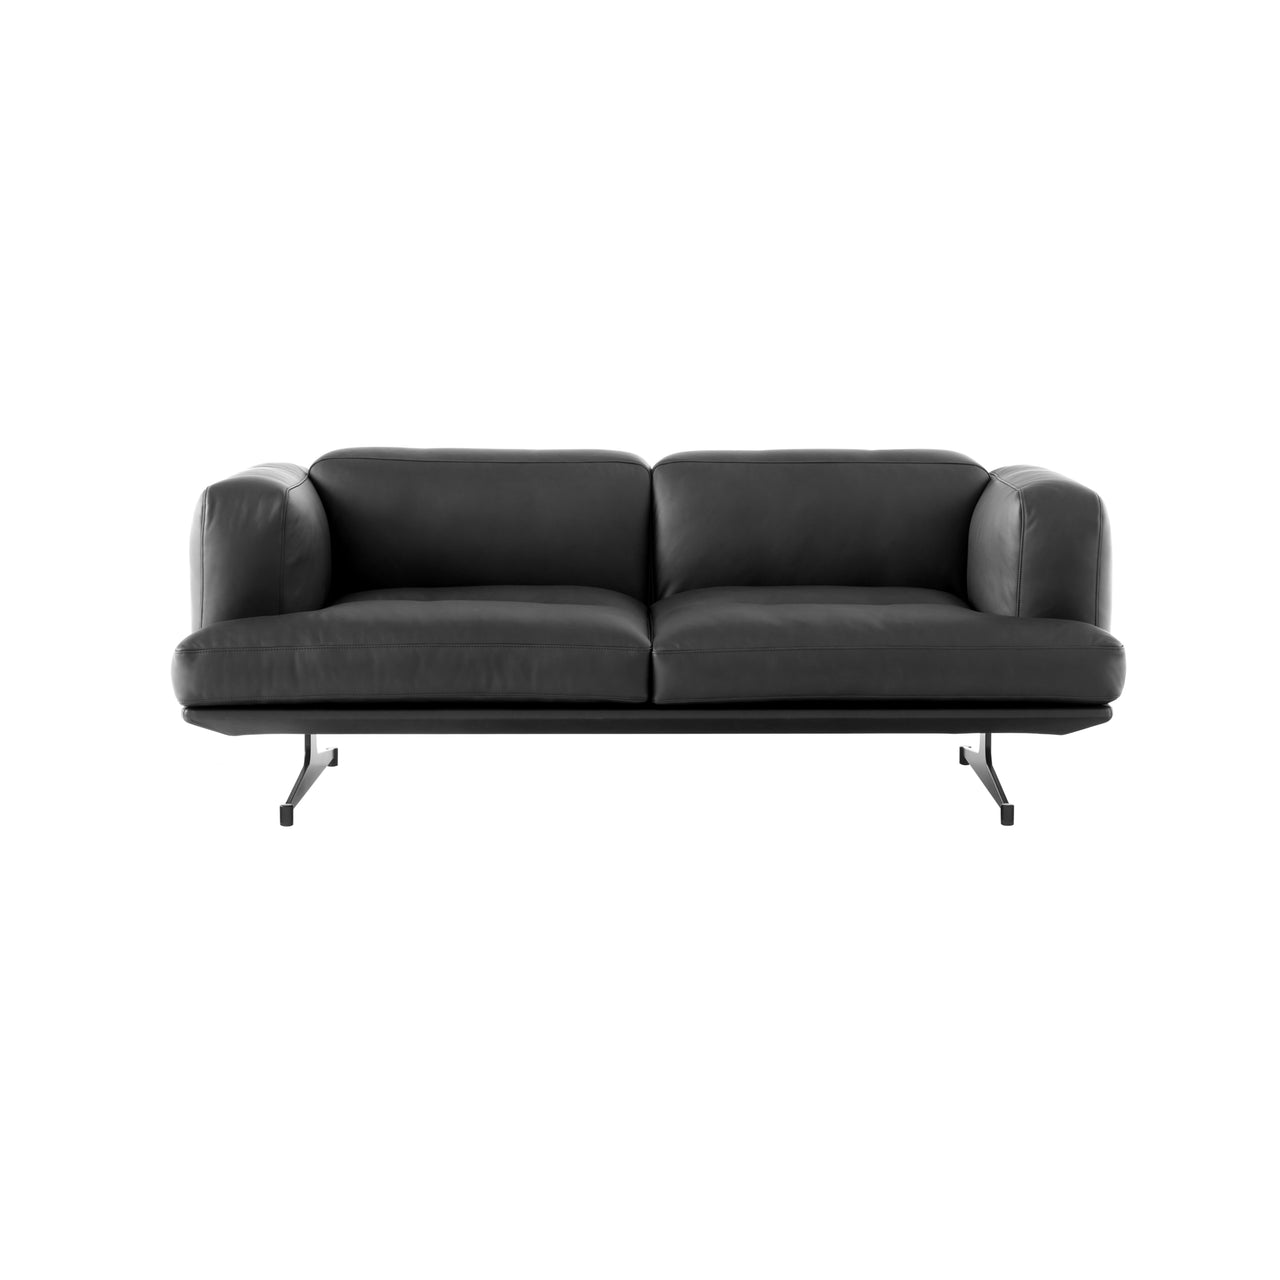 Inland Sofa: AV22 + AV23 + 2 Seater + Black Noble Leather